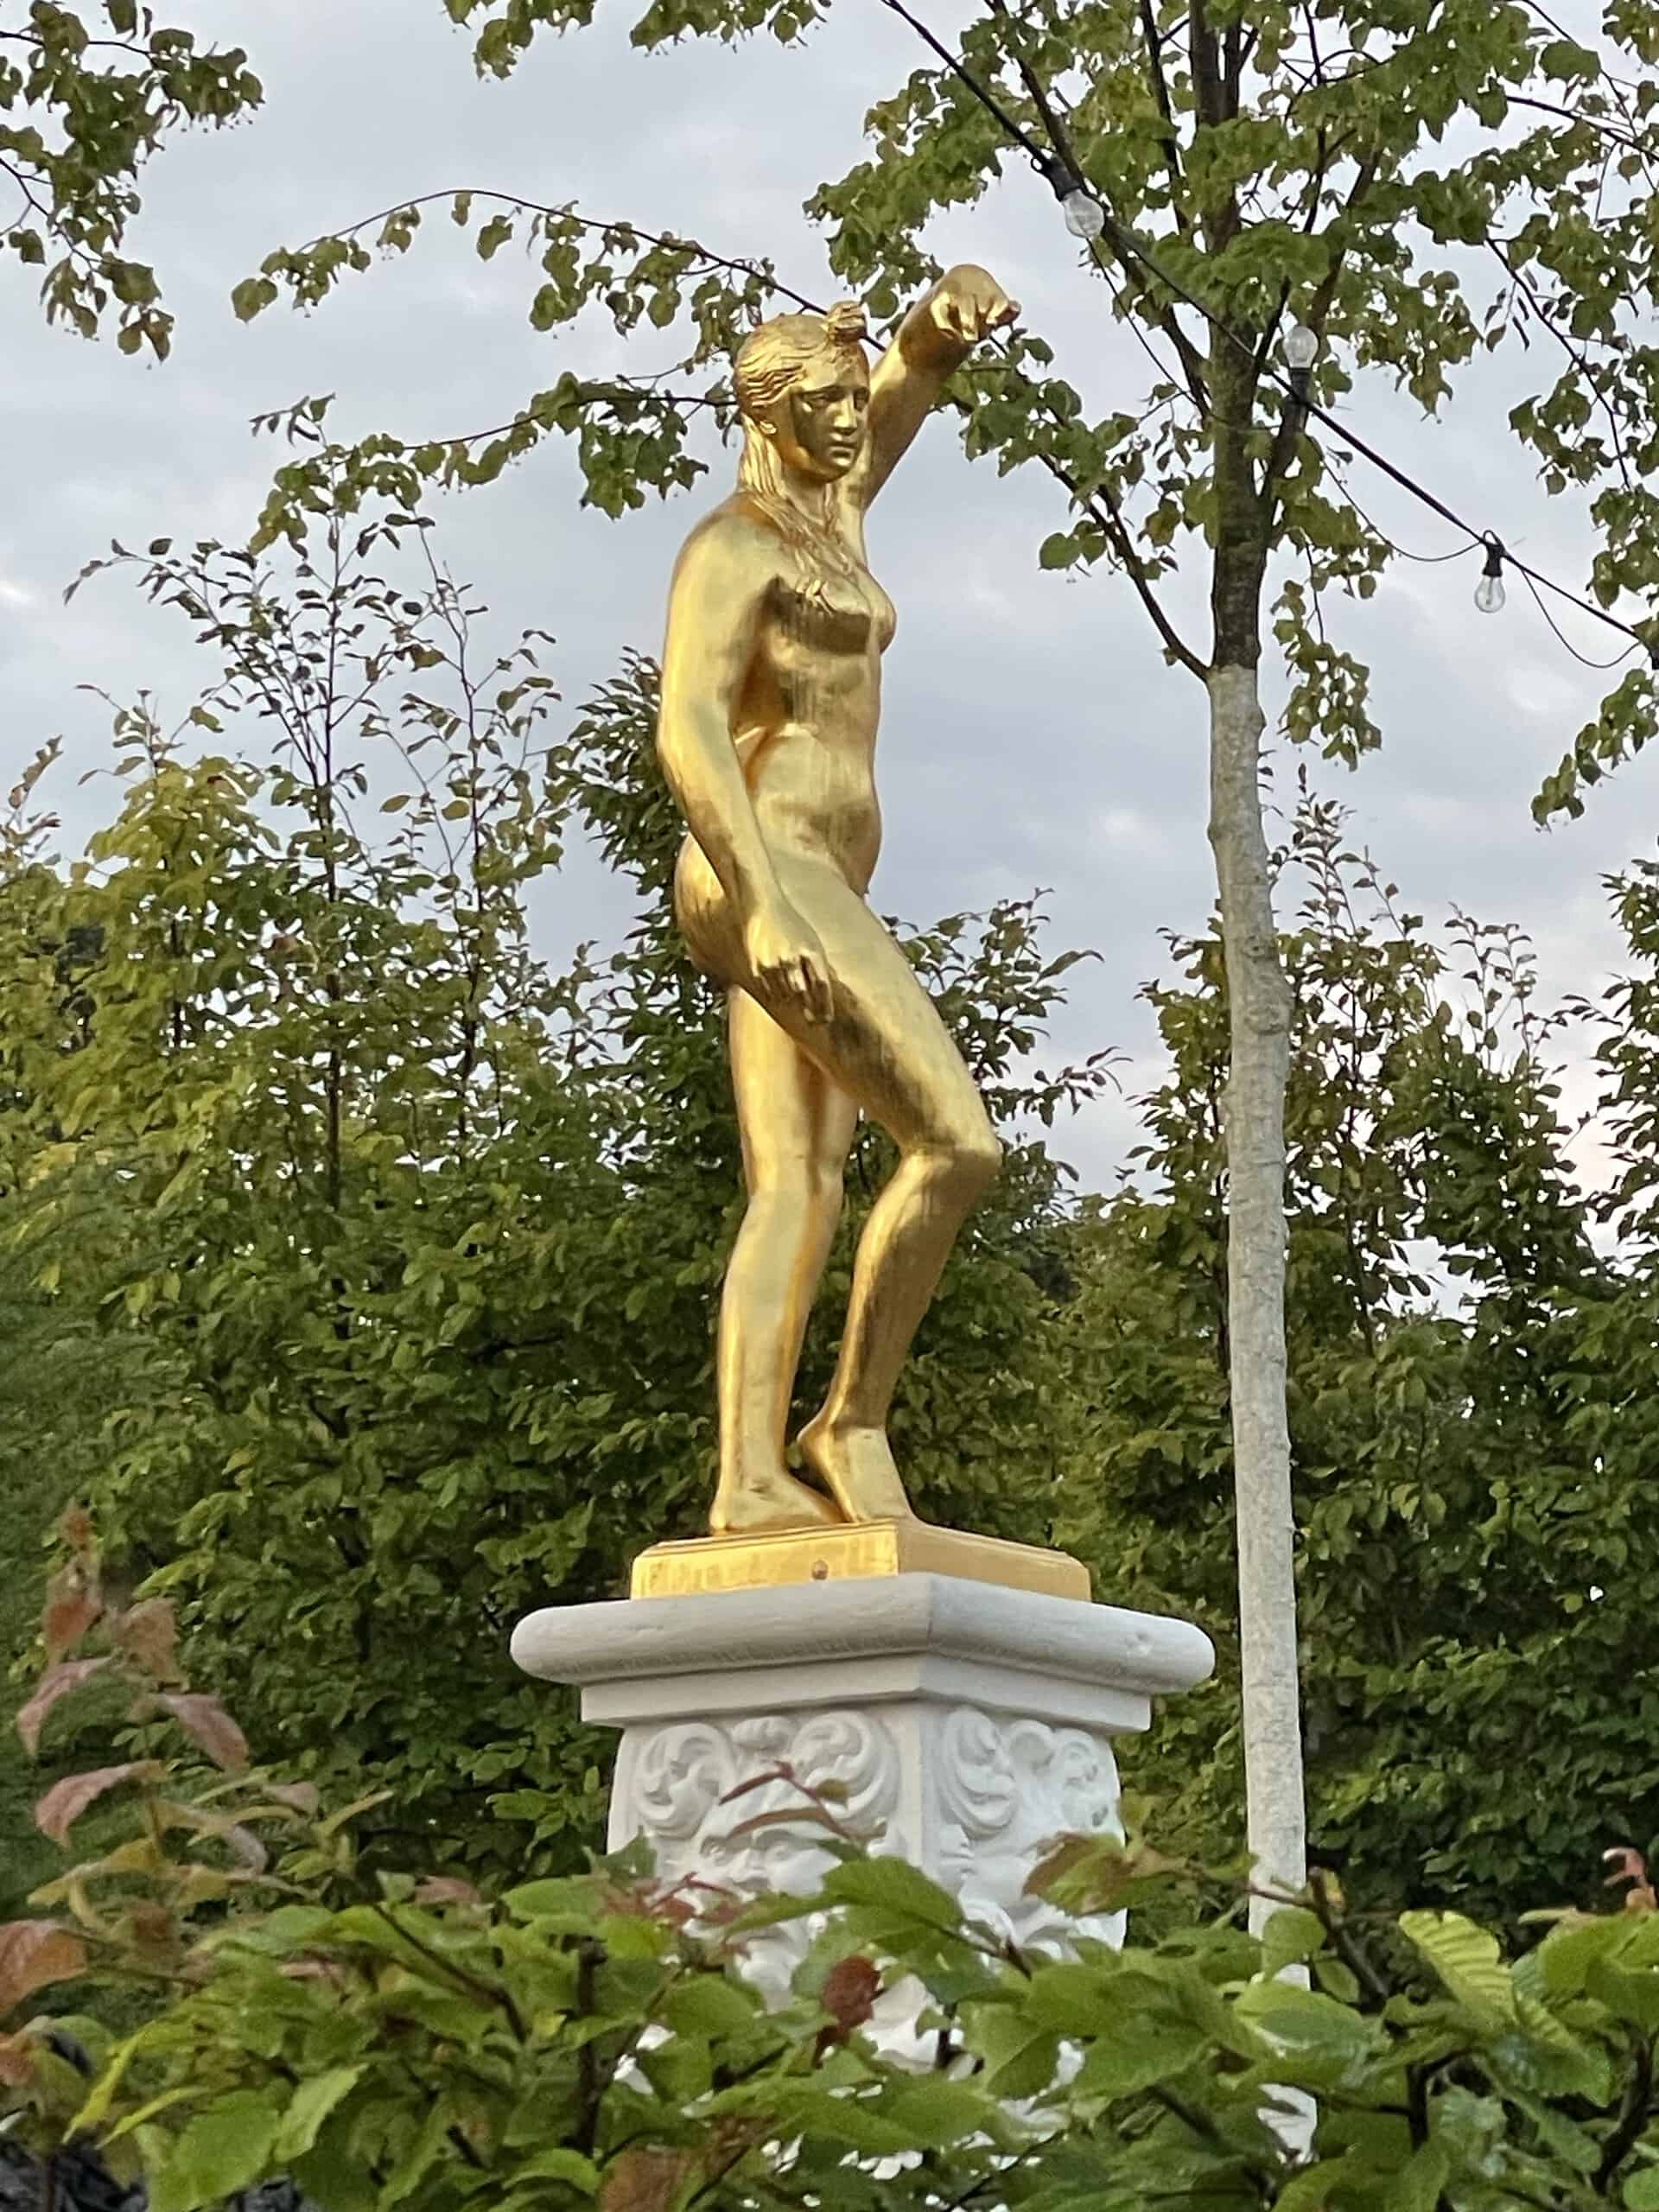 Fast schon taghell, golden, nackte Frauenfigur linker Hand auf der Bühne des Gartentheaters in Herrenhasusen.